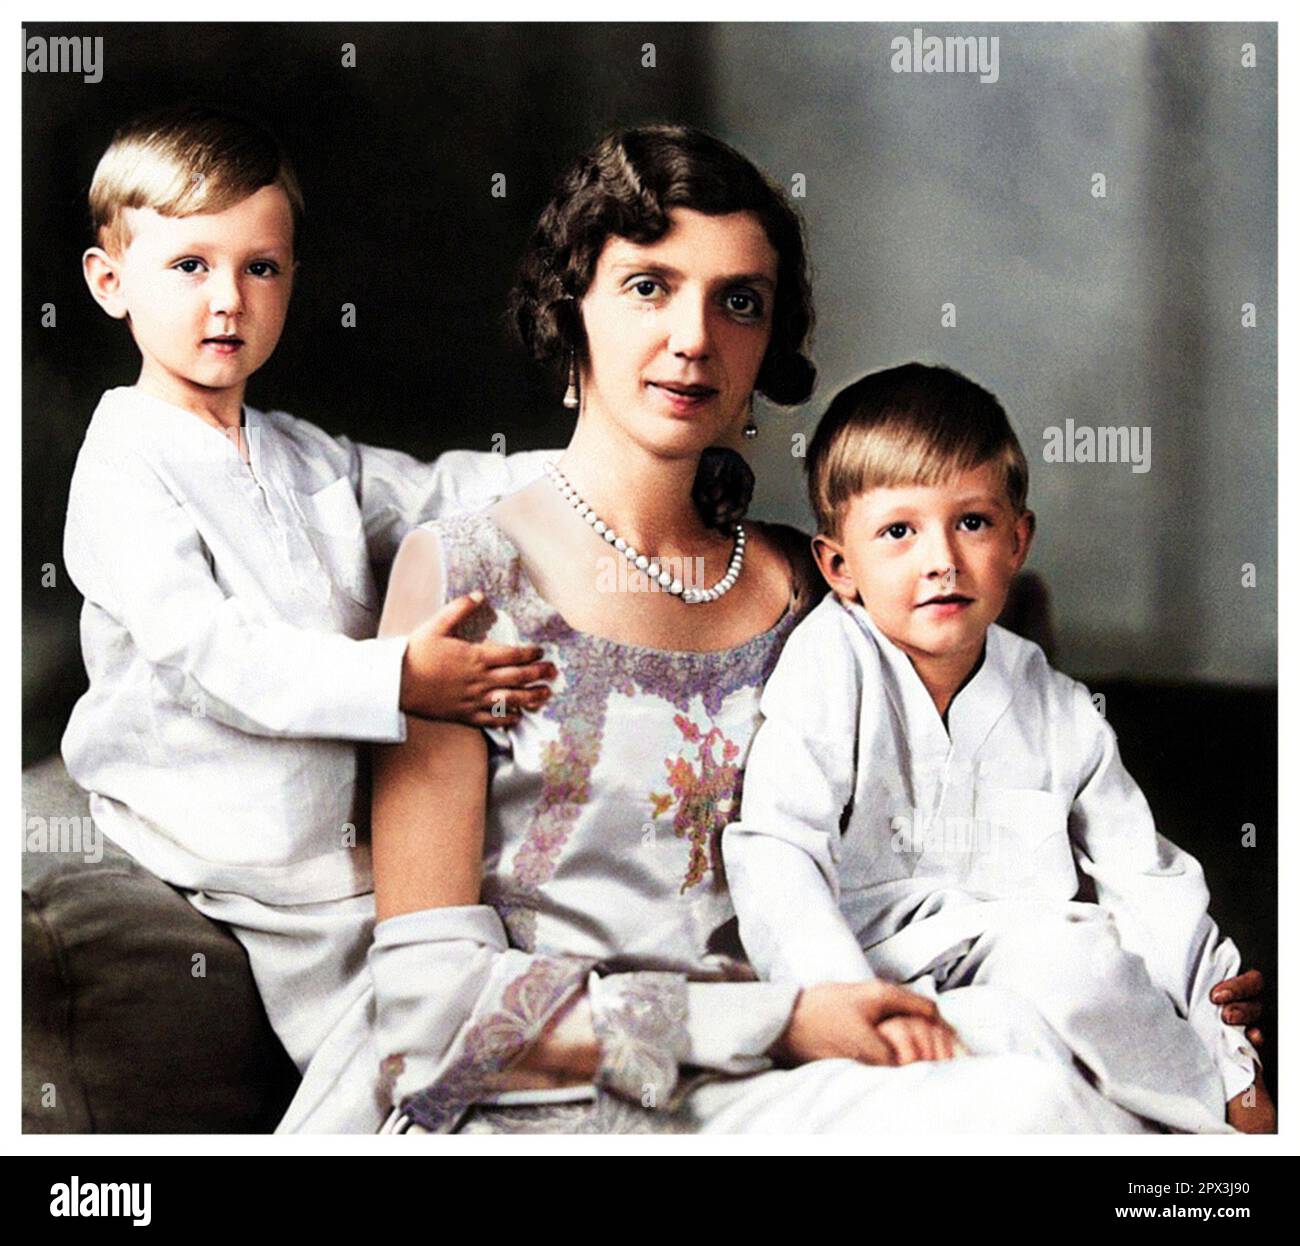 1932 c., Rom , ITALIEN : die italienische Prinzessin MAFALDA di SAVOIA ( 1902 - 1944 ) , verheiratet mit dem deutschen Prinzen Filippo d' Assia Kassel ( Philipp von HESSEN ) , auf diesem Foto mit Söhnen : MORITZ ( Maurizio , 1926 - 2013 ) und HENRICH ( Enrico , 1927 - 1999 ). Mafalda war die Tochter des italienischen Königs VITTORIO EMANUELE III und der Königin ELENA ( Helene del Montenegro ). Foto: EVA BARRETT ( 1879 - 1950 ). DIGITAL GEFÄRBT .- SAVOY - principessa - ITALIA - personalità celebrità da BAMBINI - da piccolo da piccoli piccola - bambino - KIND - KINDHEIT - INFANTILE - PERSÖNLICHKEITSPROMINENZ - Persönlichkeiten Cele Stockfoto